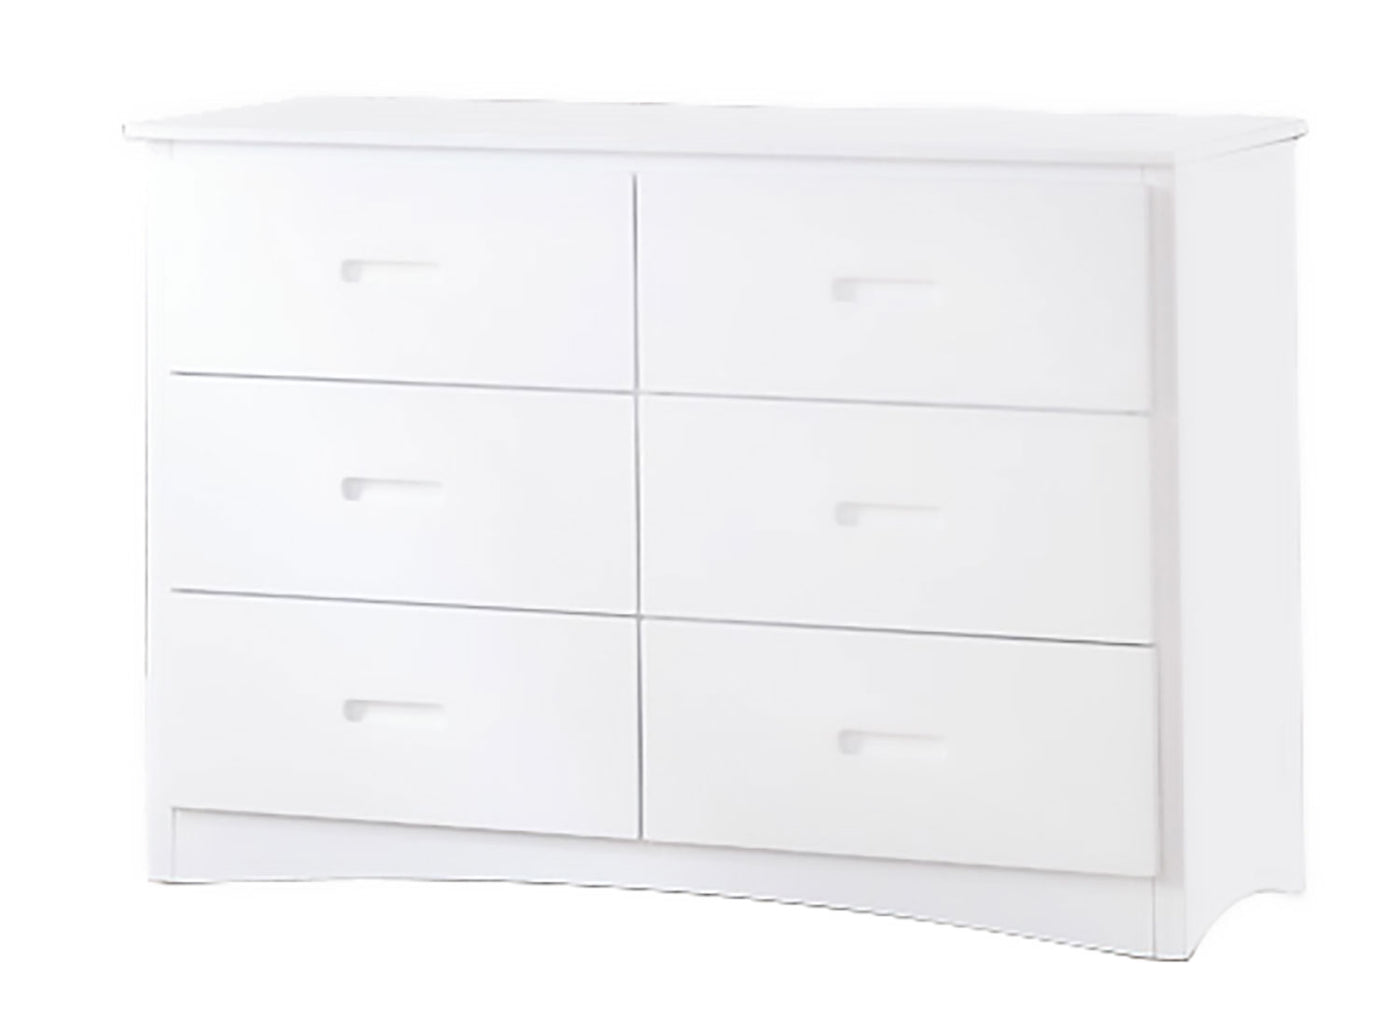 Galen 6 Drawer Dresser - White